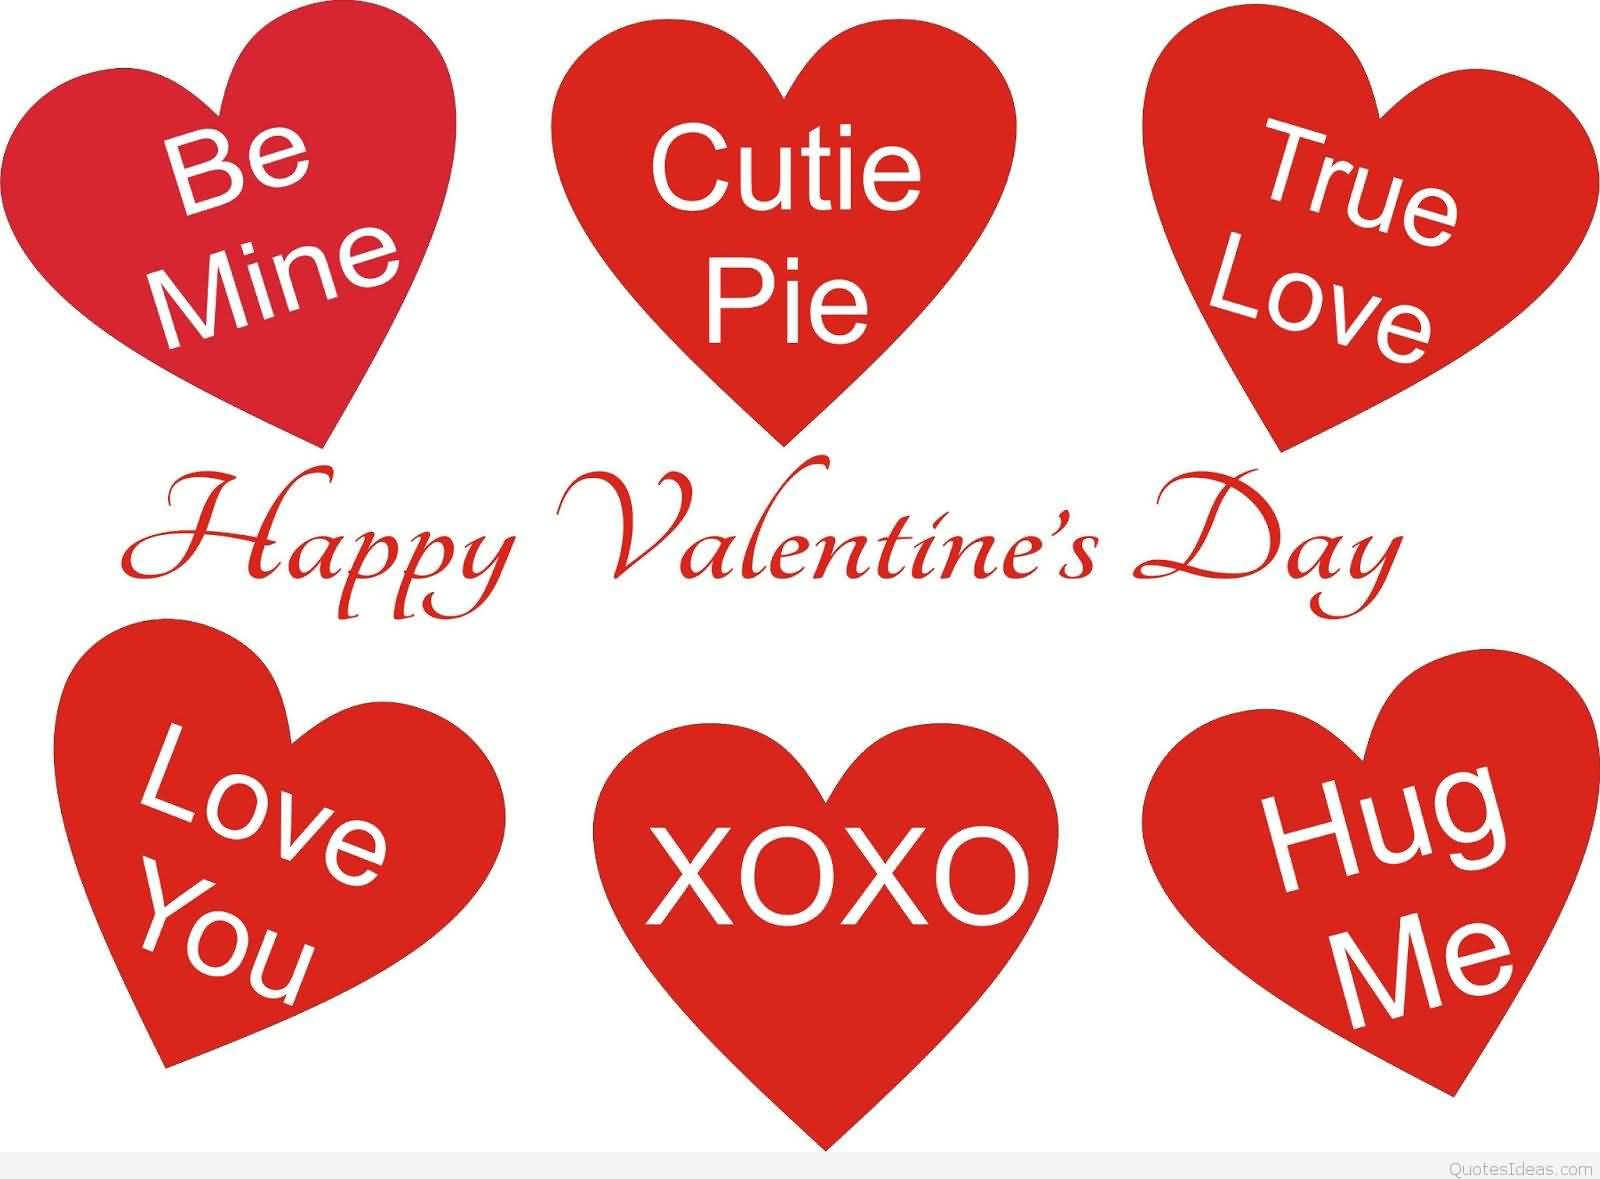 Happy Valentine’s Day be mine cutie pie true love